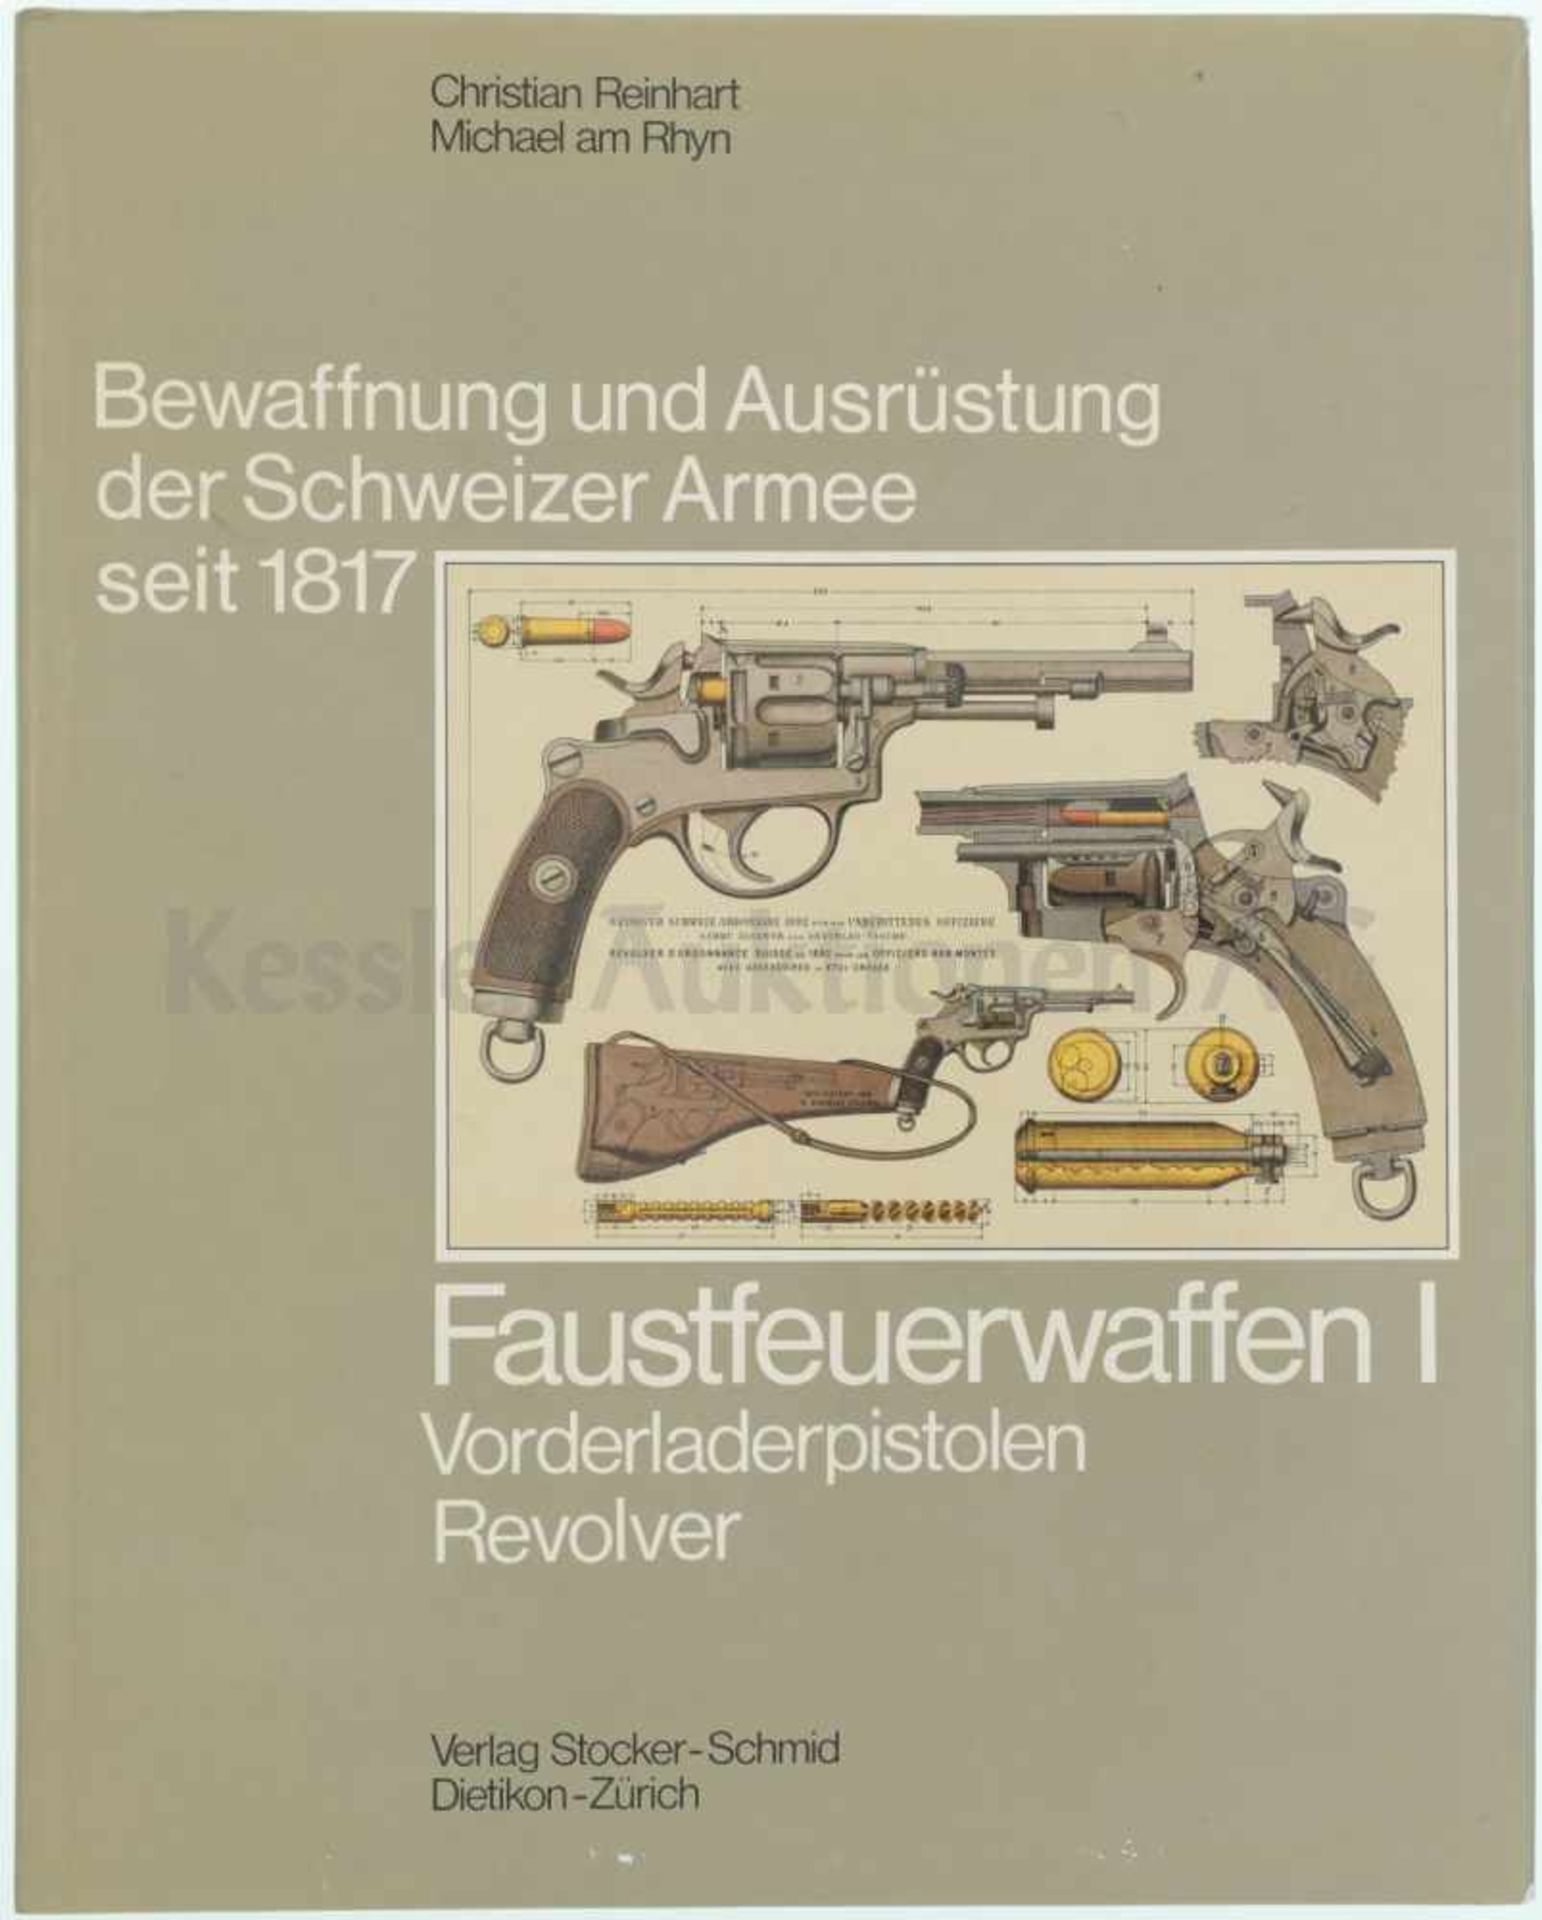 Bewaffnung und Ausrüstung der Schweizer Armee seit 1817, Faustfeuerwaffen I Von der